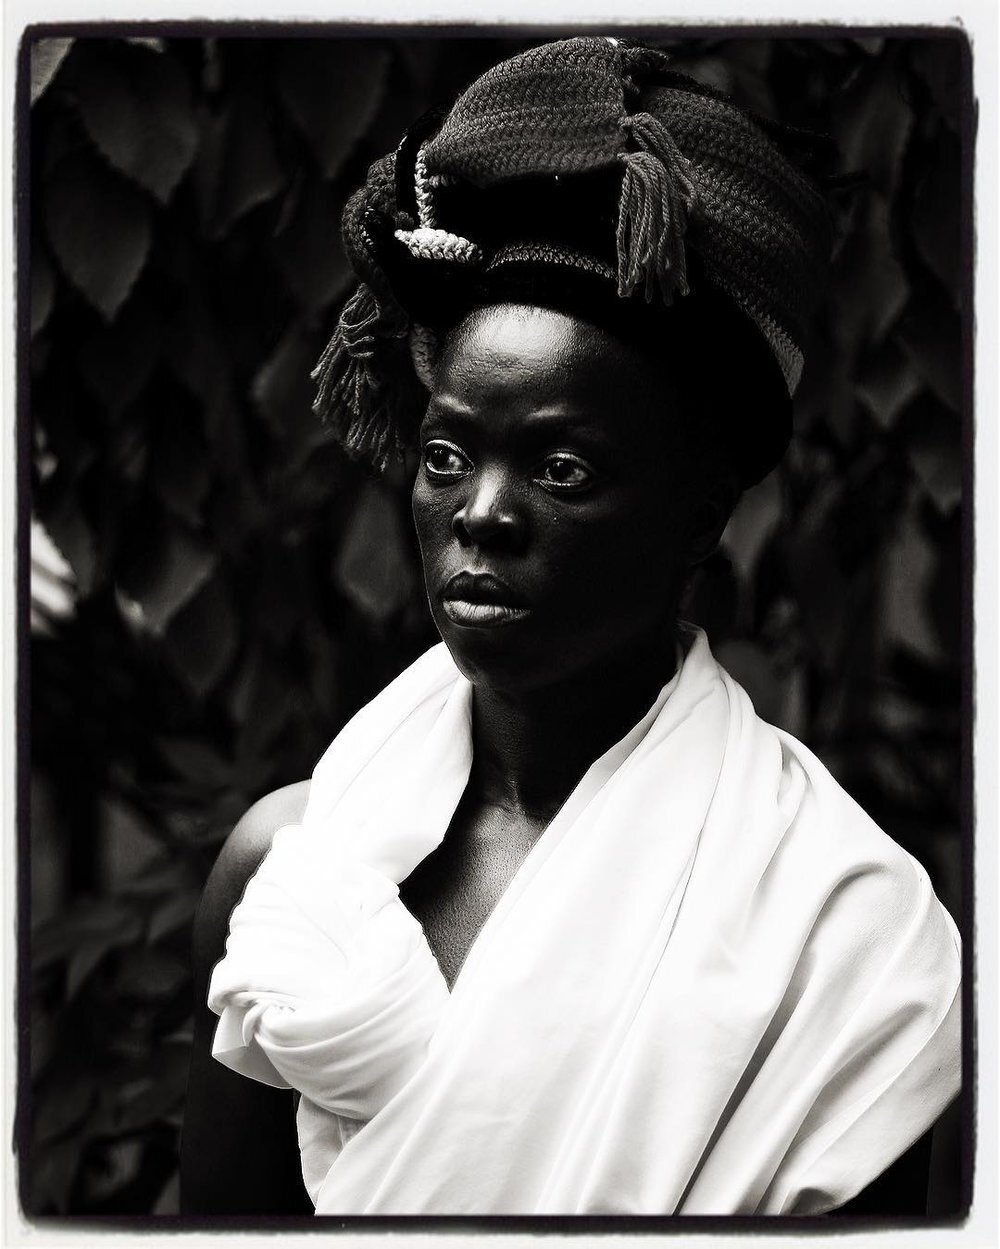 Zanele Muholi - Fezekile IV, Cincinnati from the series Somnyama Ngonyama (Hail the Dark Lioness), 2016